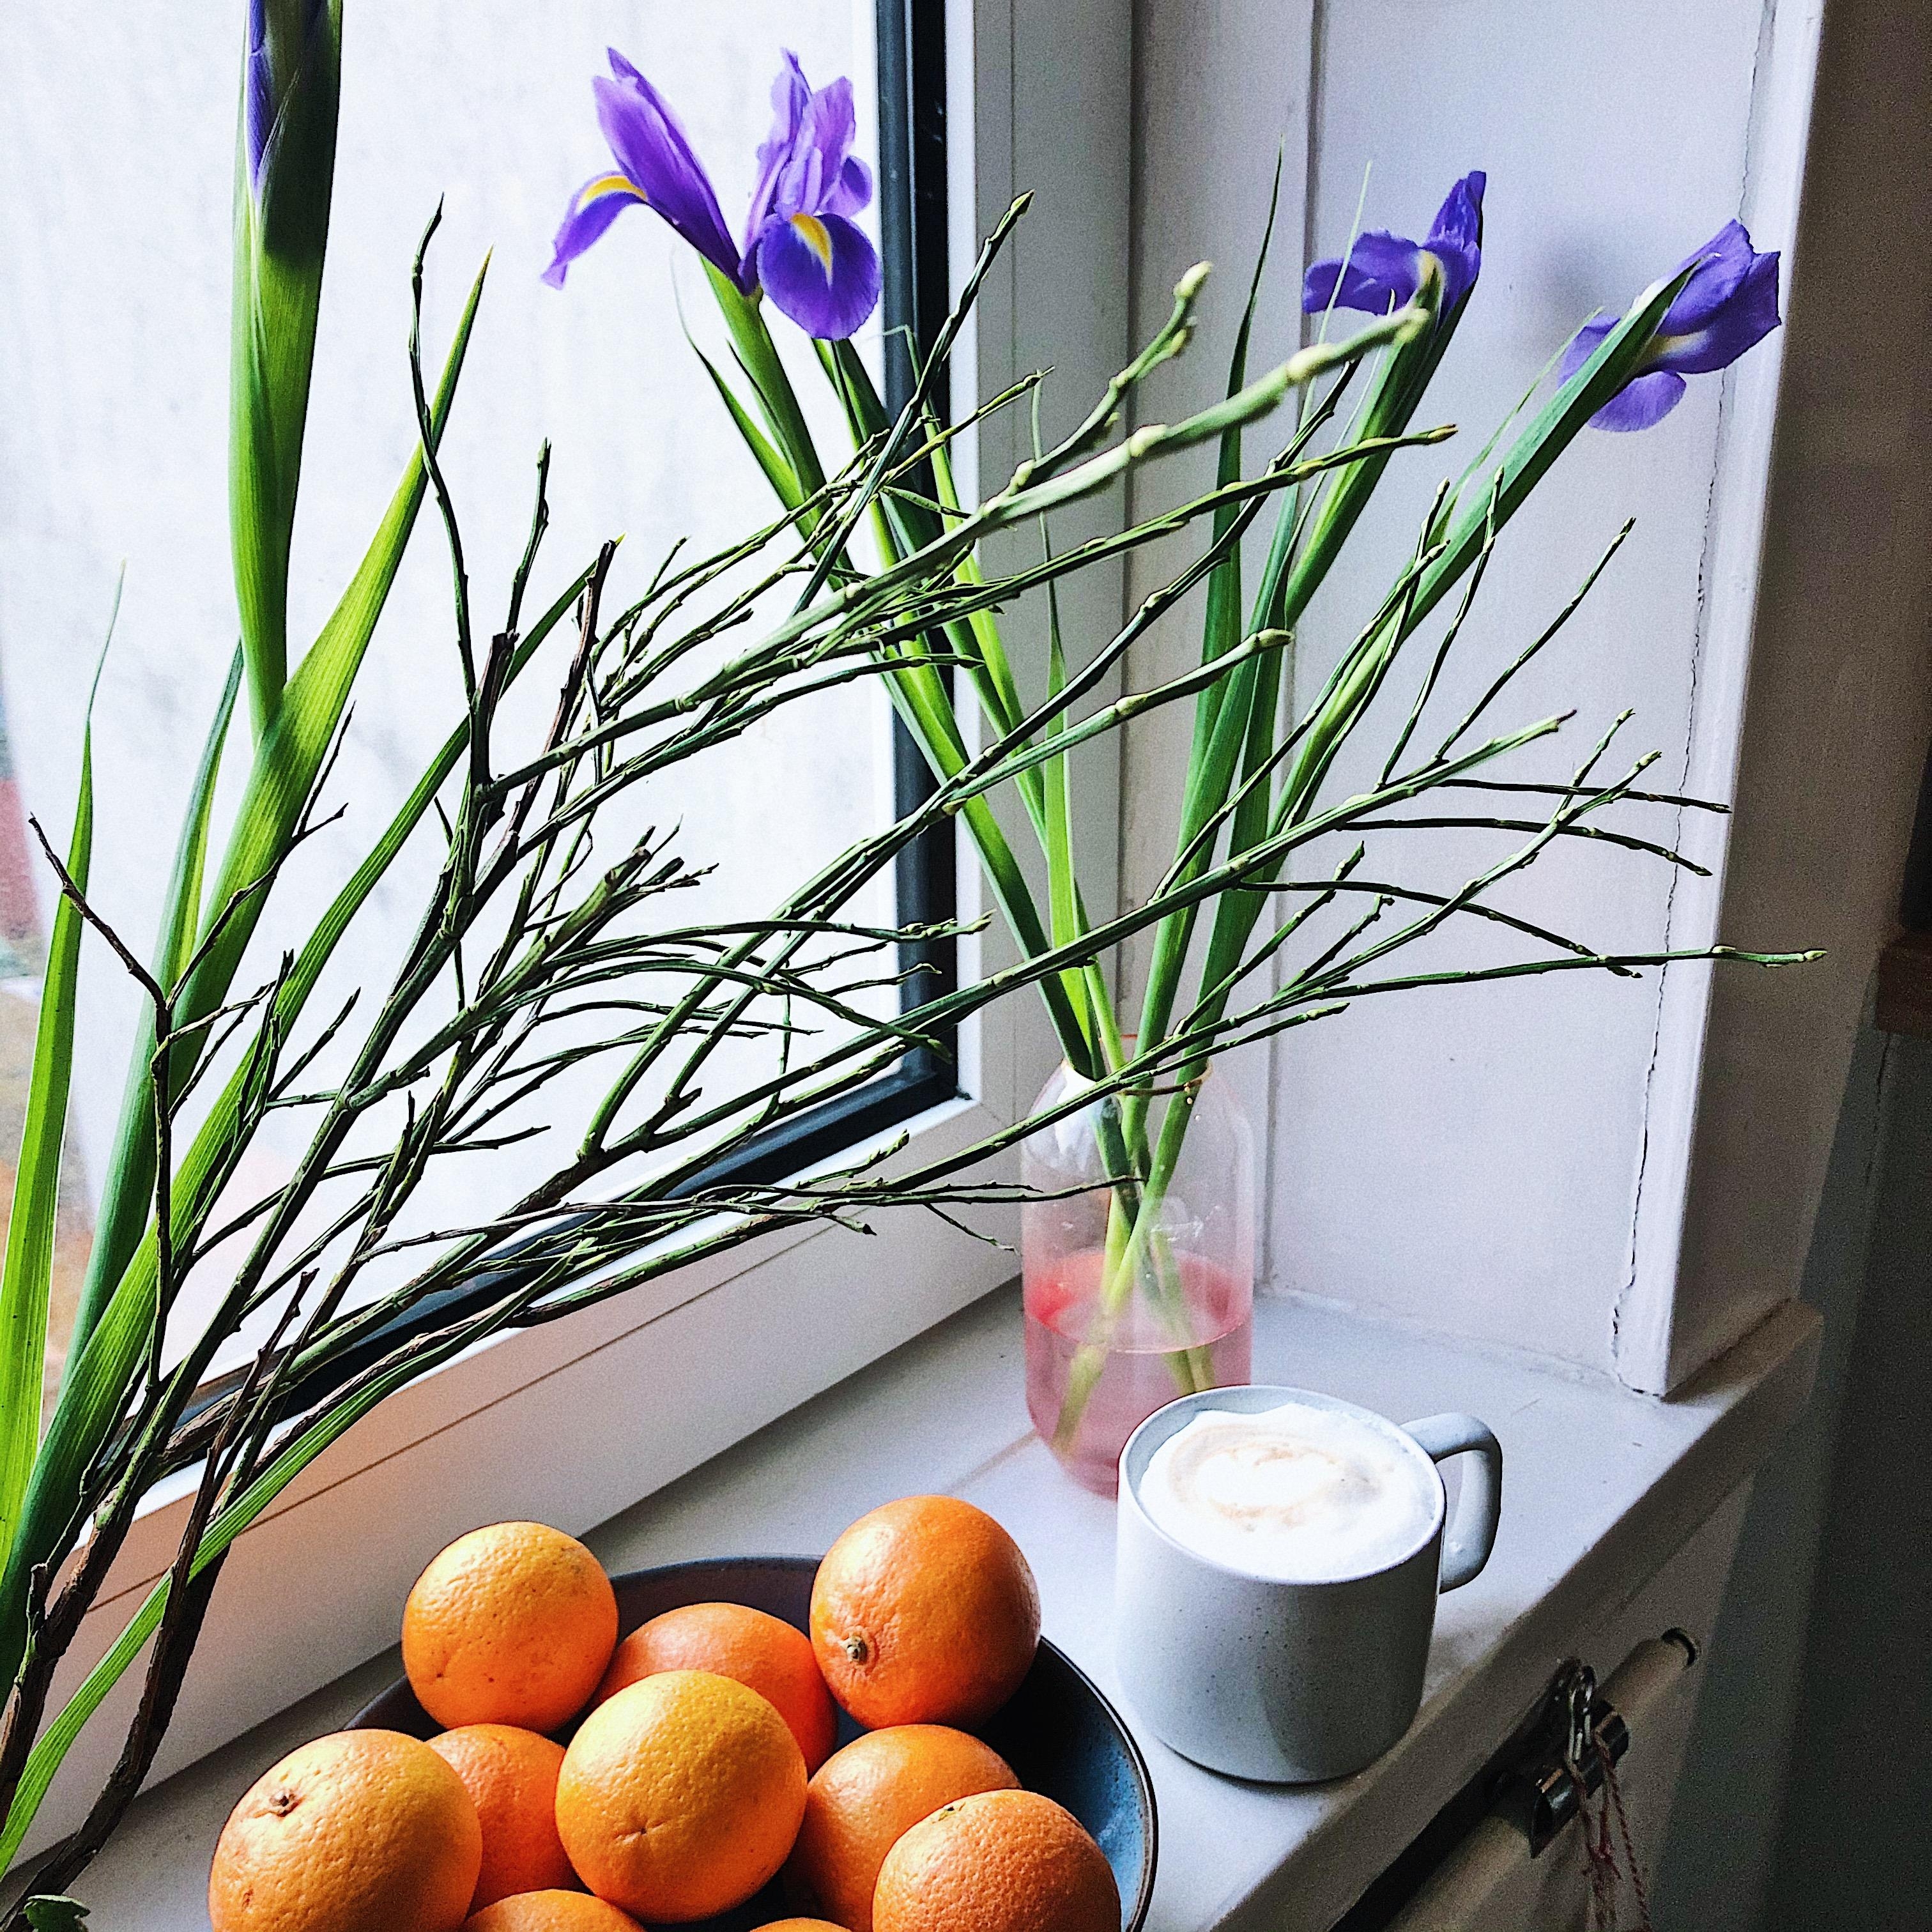 Die berühmte Wanderschwertlilie hat sich heute mal in die Küche bewegt und zum Kaffee gesellt.
#Blumen #Kaffee #Küche